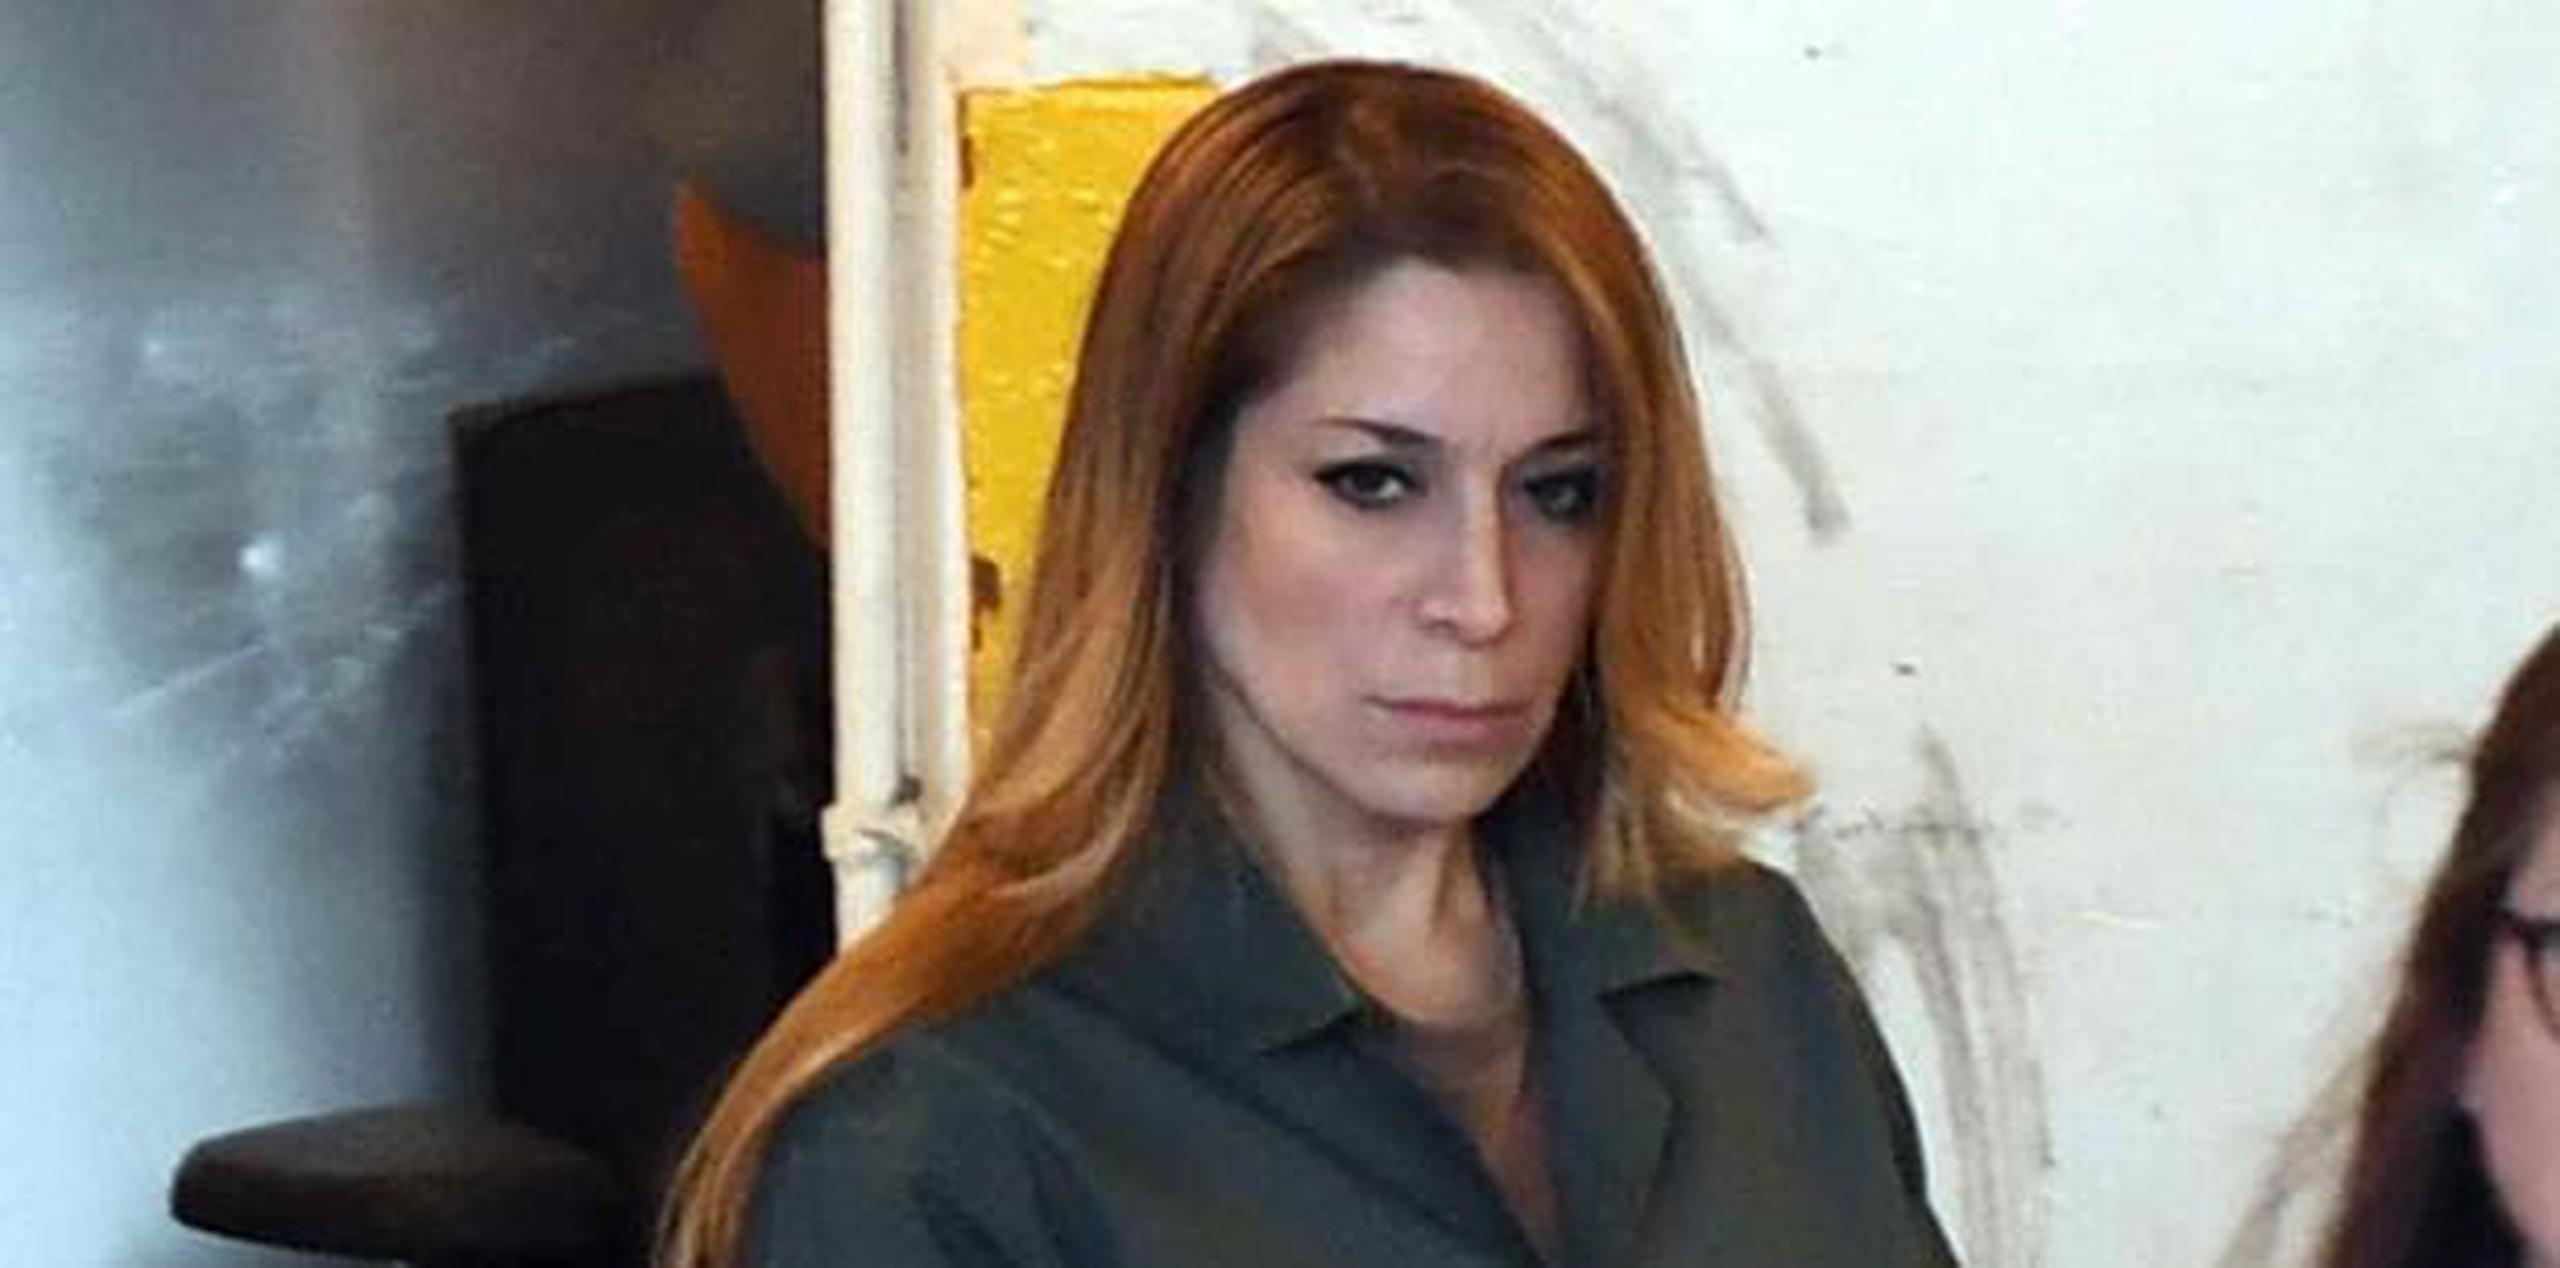 Áurea Vázquez Rijos fue hallada culpable de conspirar para que en septiembre de 2005 asesinaran a su entonces esposo Adam Anhang. (Archivo)